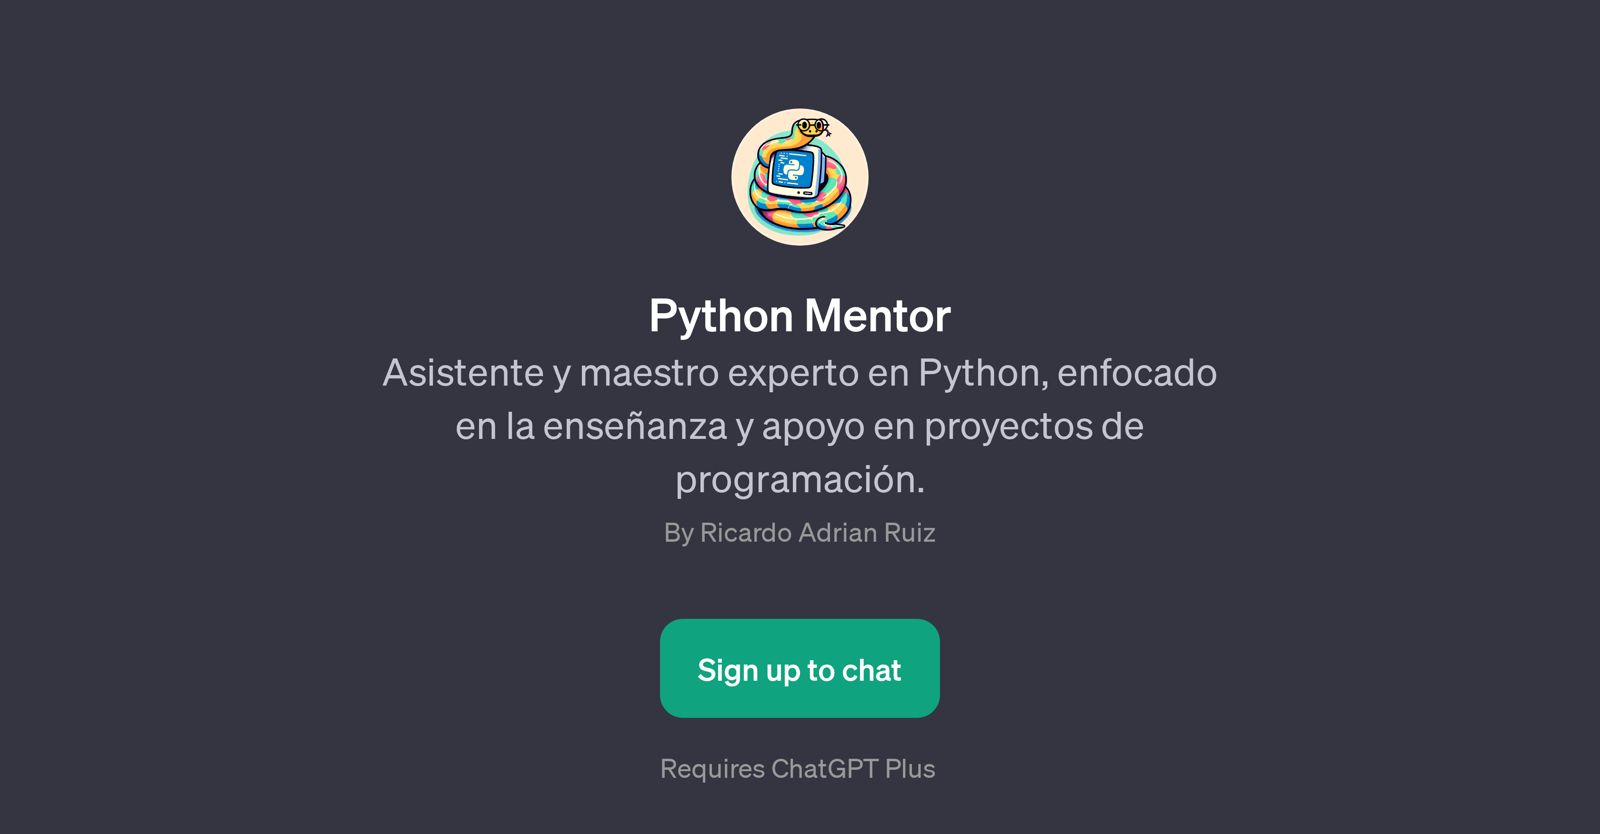 Python Mentor website